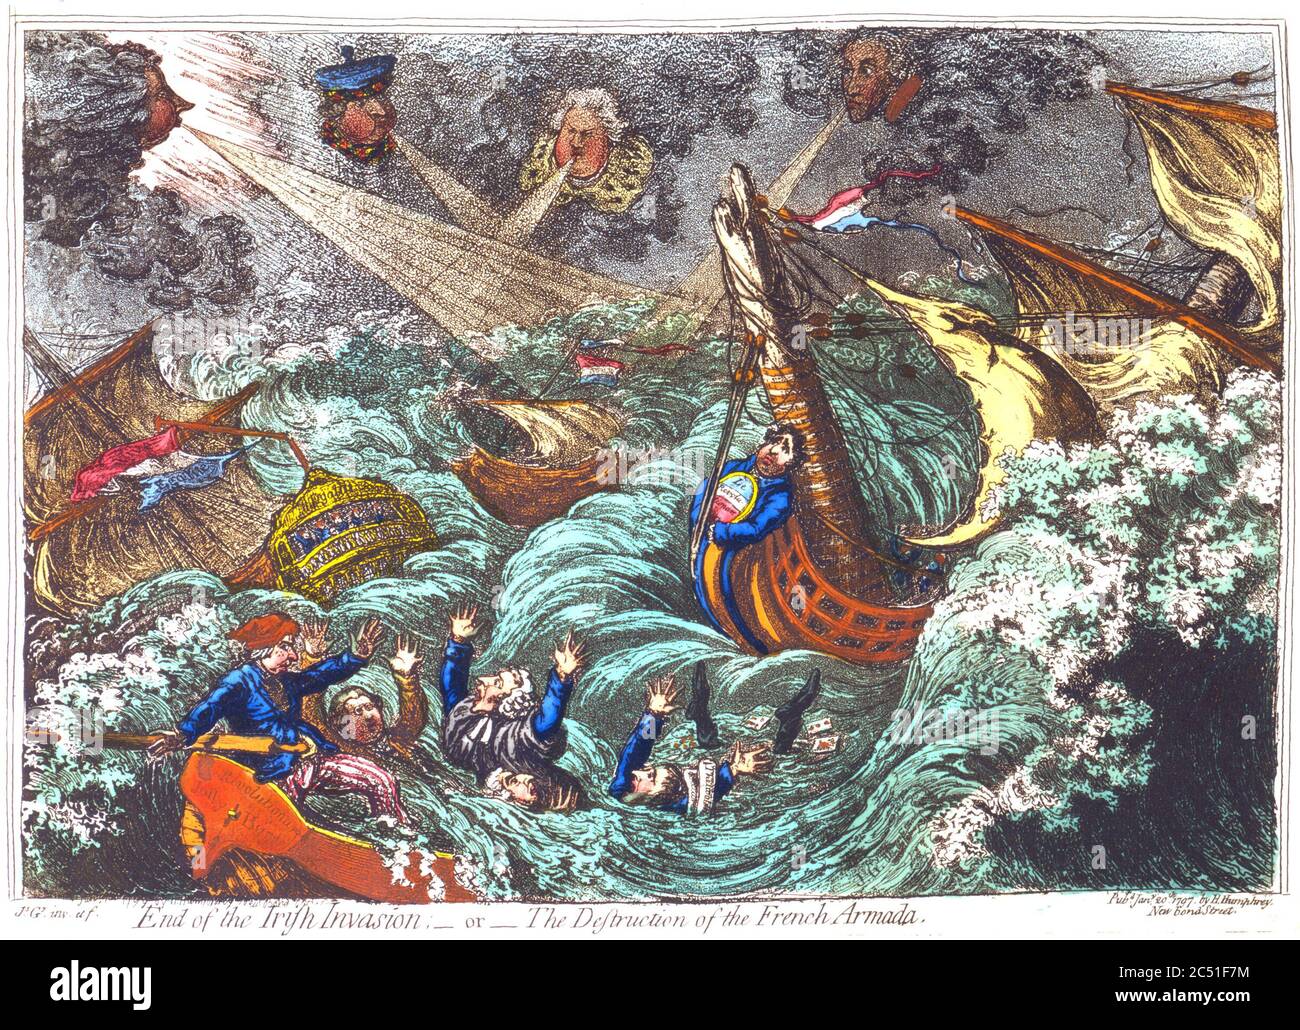 ENDE DER IRISCHEN INVASION oder Zerstörung der französischen Armada. Ein Cartoon von James Gillray aus dem Jahr 1797, der verschiedene Politiker zeigt Stockfoto